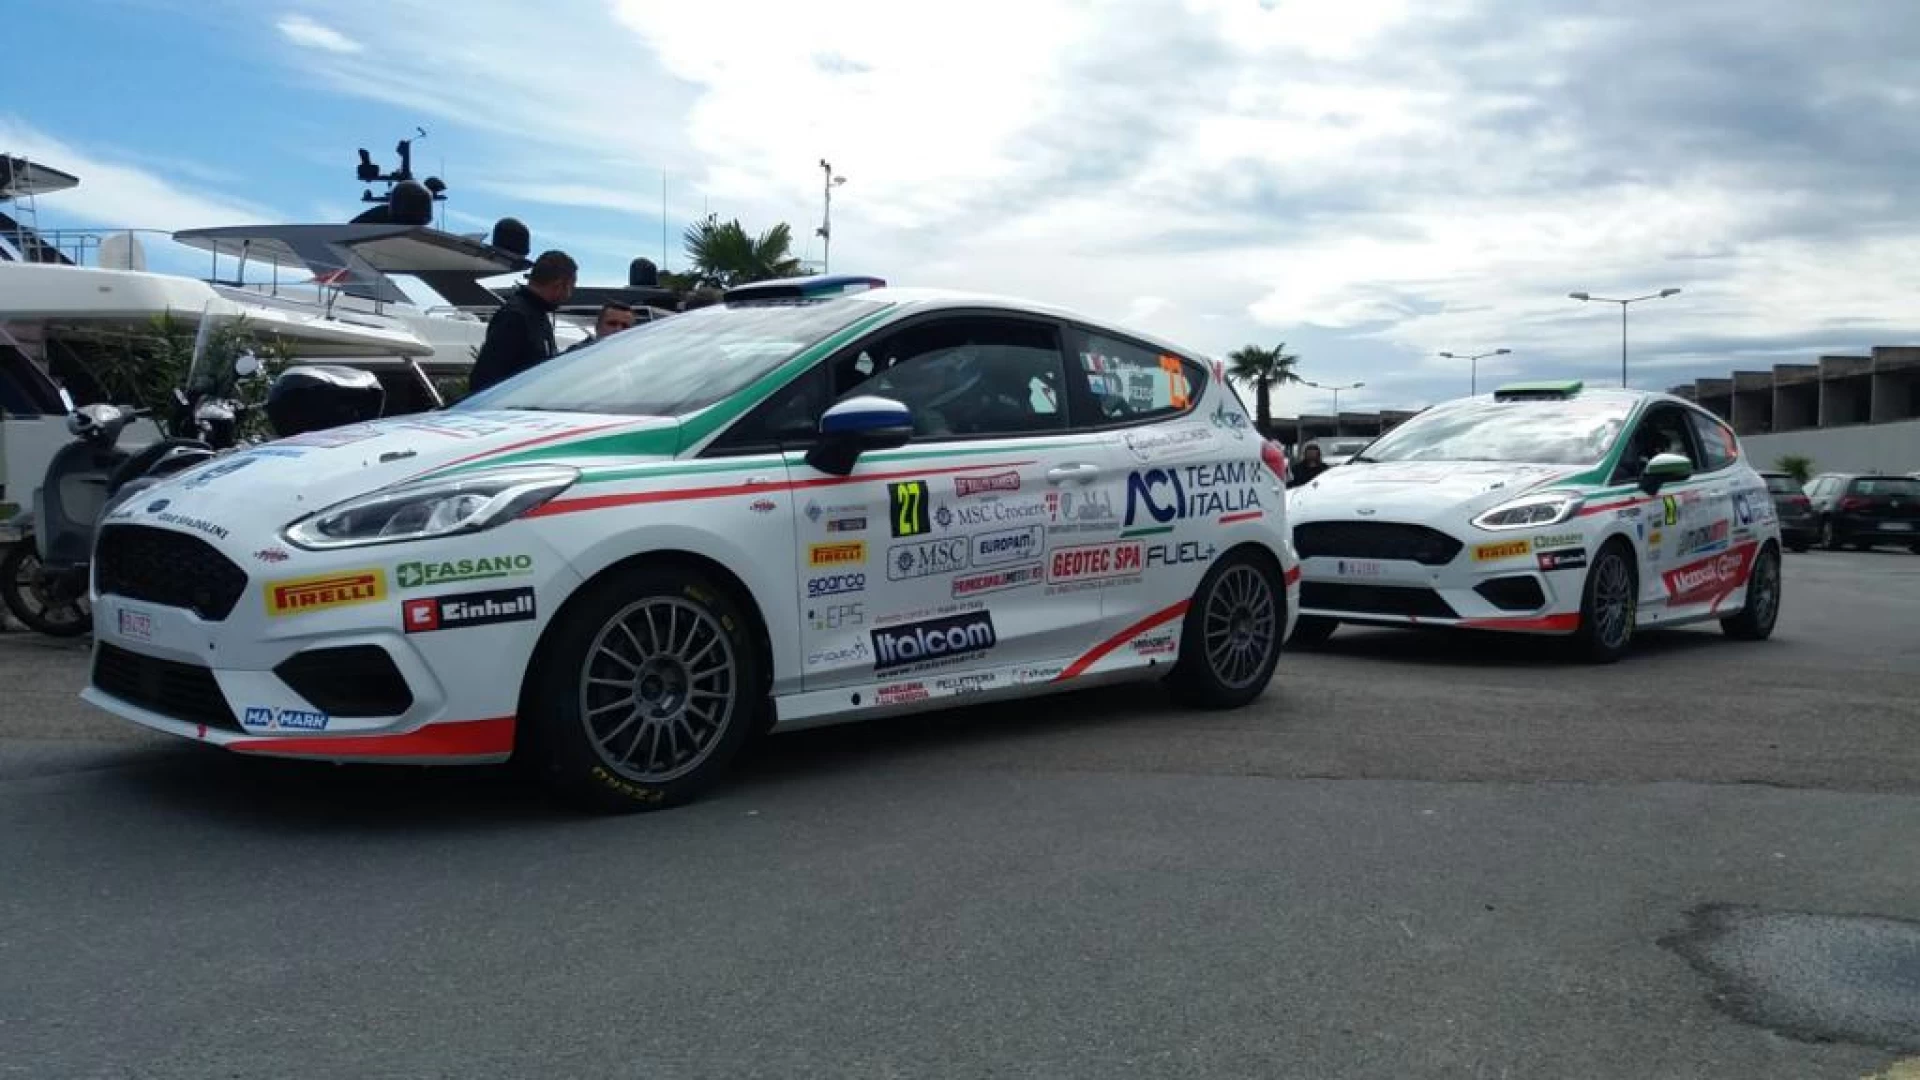 Automobilismo: Testa-Bizzocchi al Rally dell’Adriatico per un pronto riscatto.